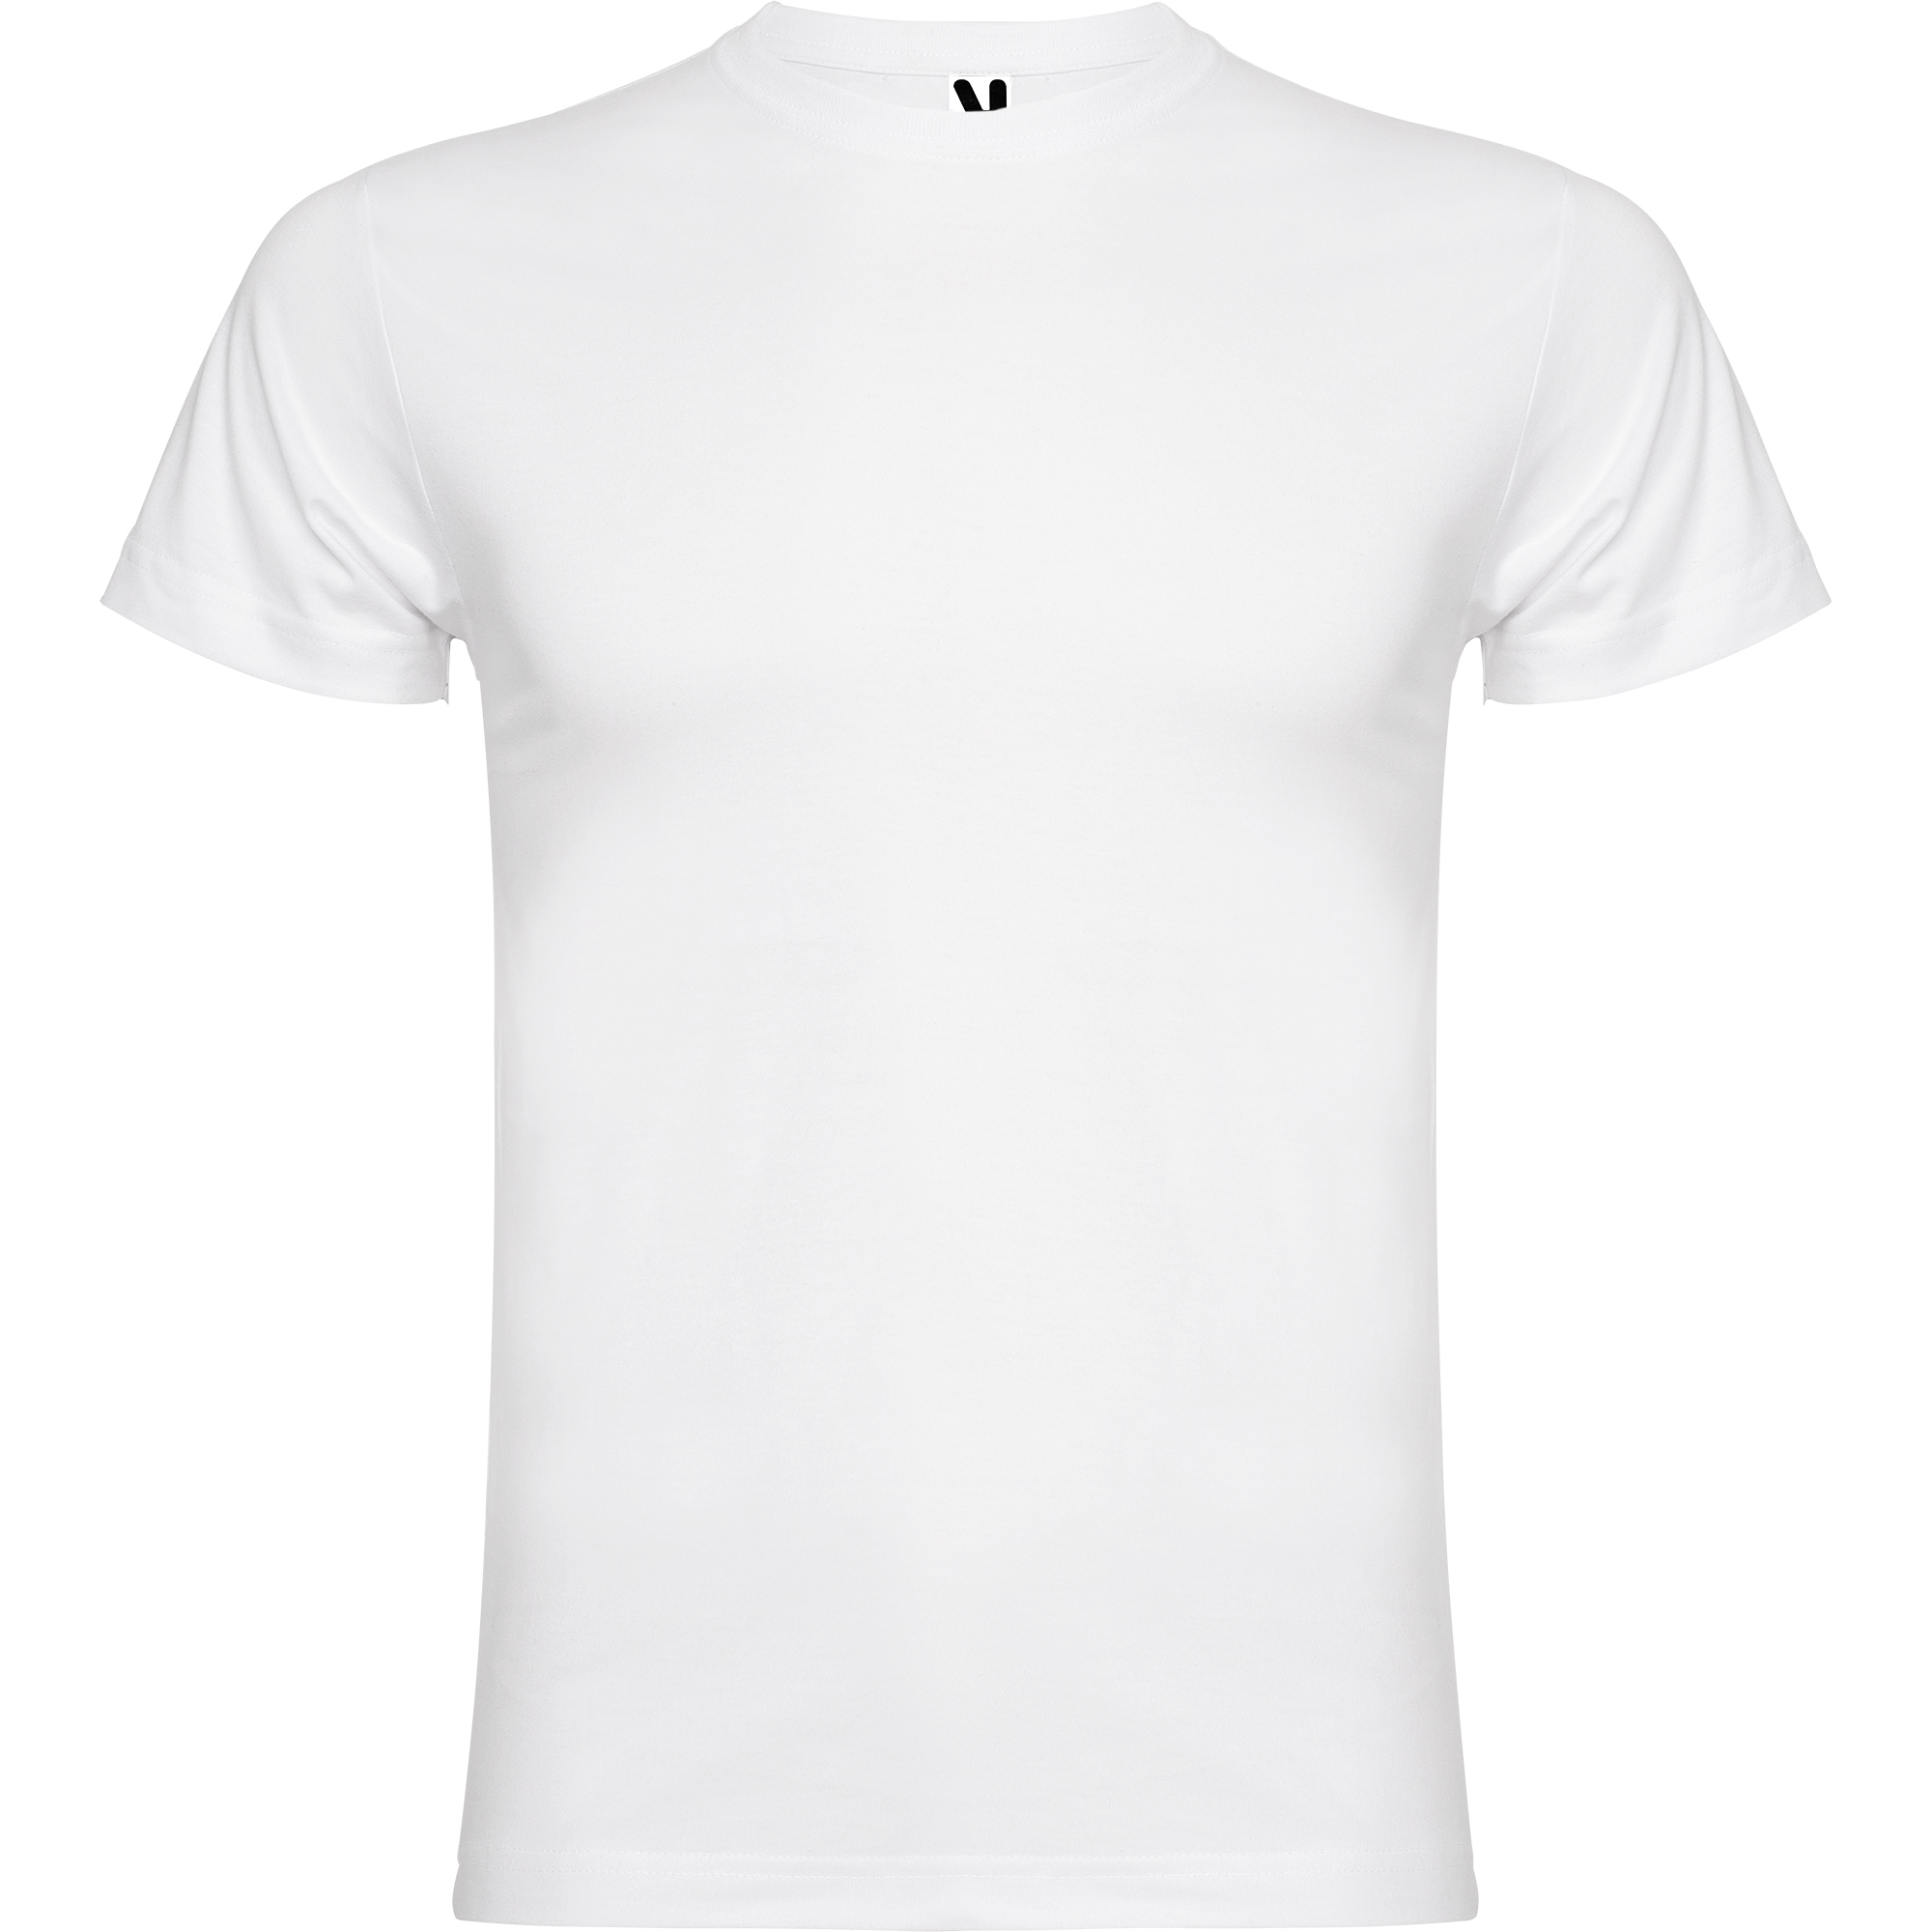 saldar antepasado caja registradora Camiseta blanca con diseño por delante y detrás - Diseño de camisetas  Copyone